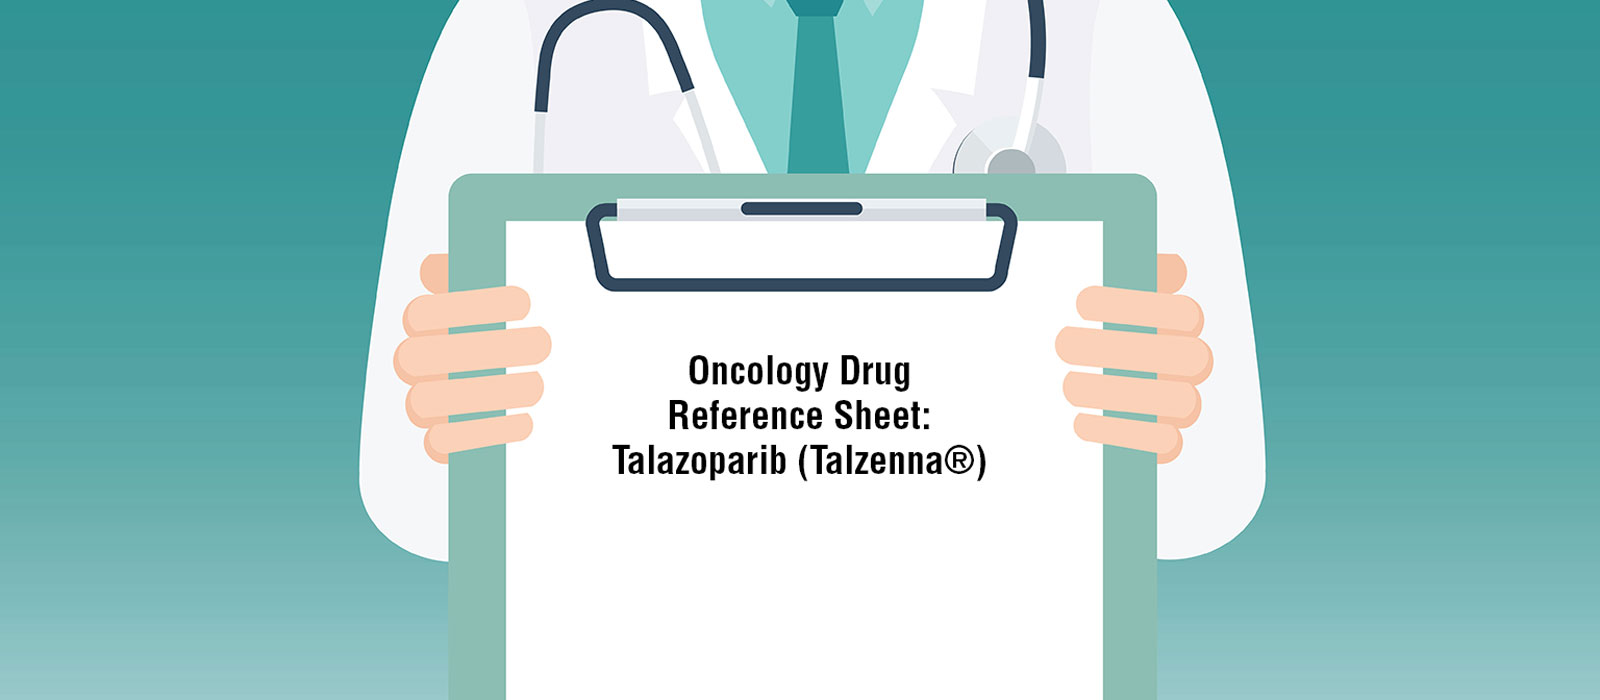 Oncology Drug  Reference Sheet: Talazoparib (Talzenna®)